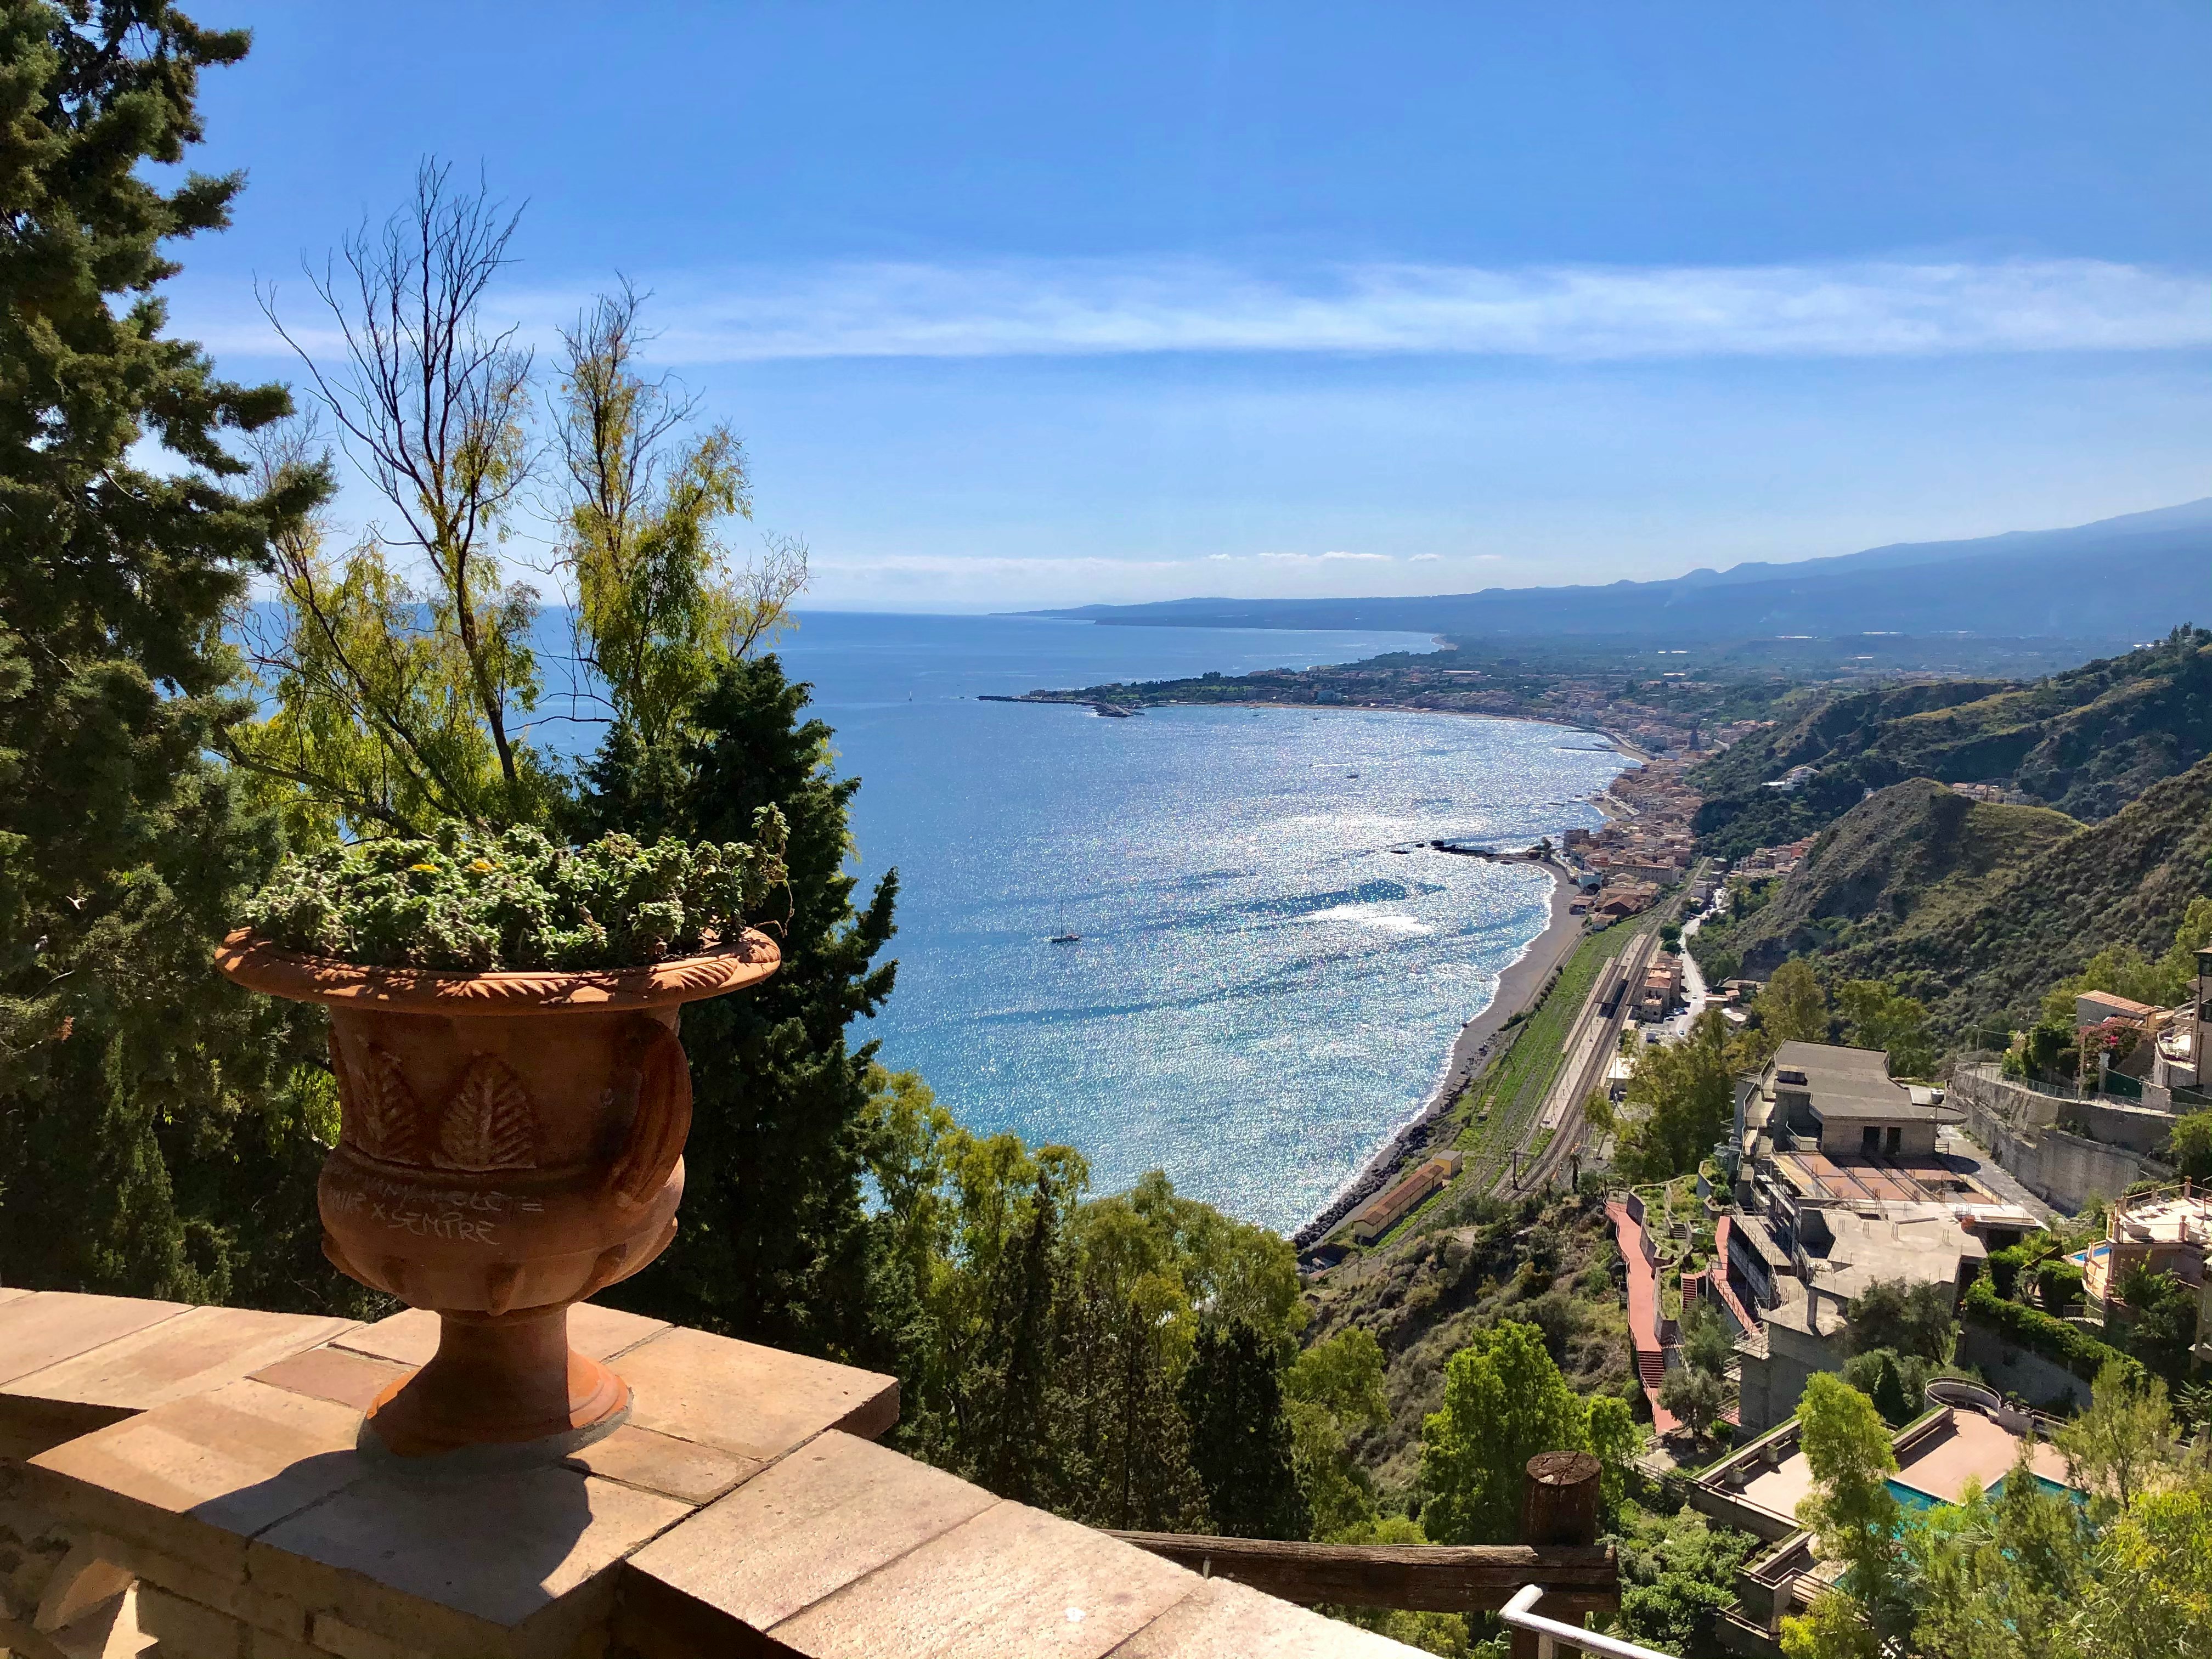 Il mare di Sicilia, Taormina

Please share w/credits